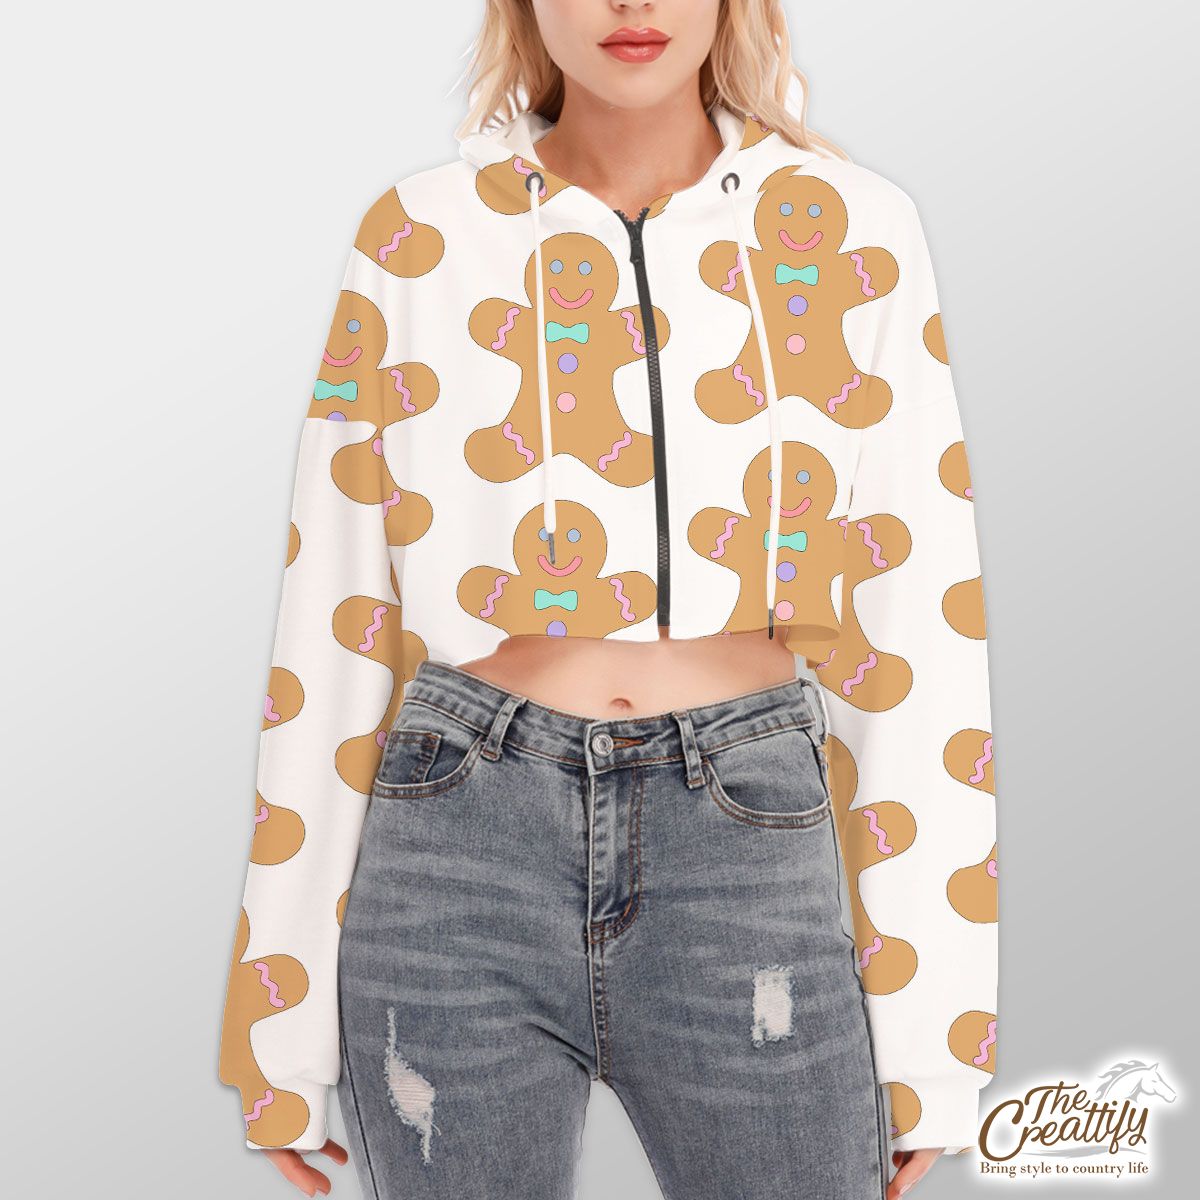 Cute Gingerbread Man Cookies Seamless Pattern Hoodie With Zipper Closure